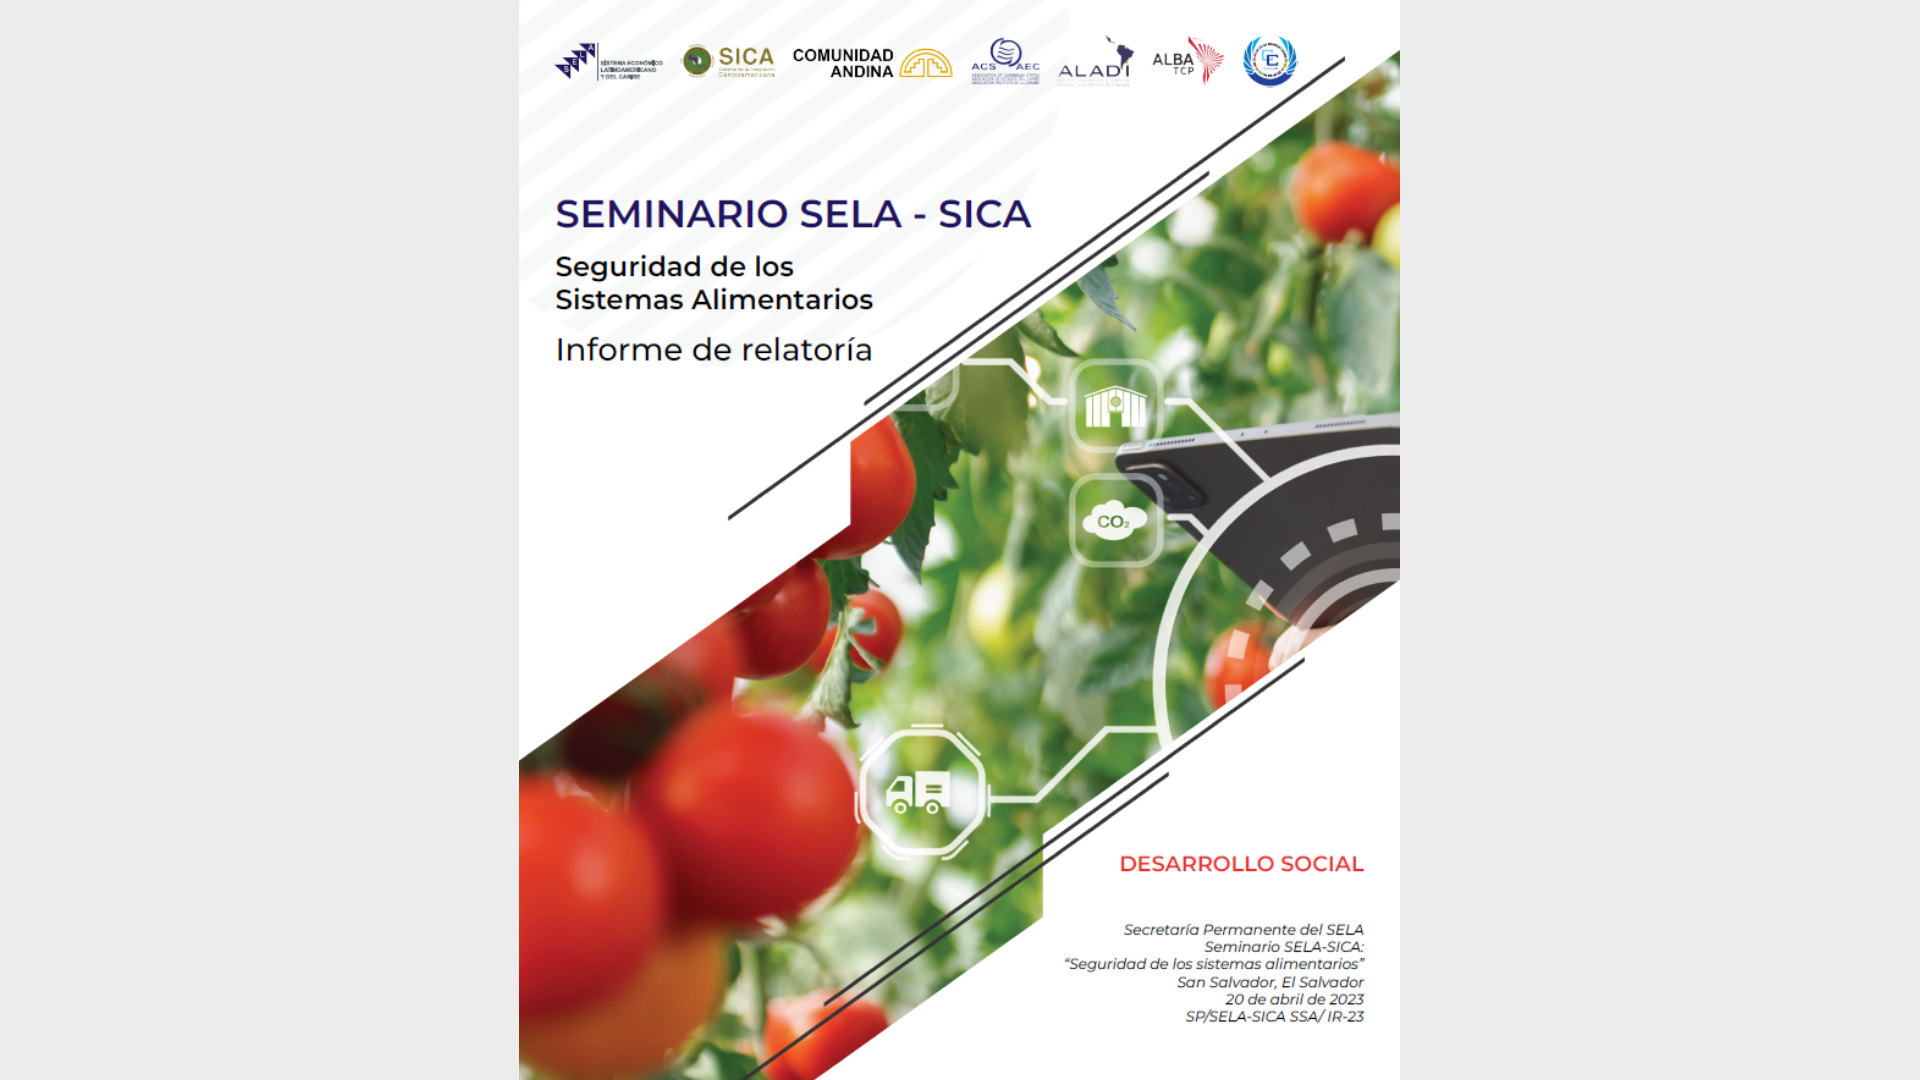 Seminario SELA-SICA: Seguridad de los sistemas alimentarios - Informe de relatoría